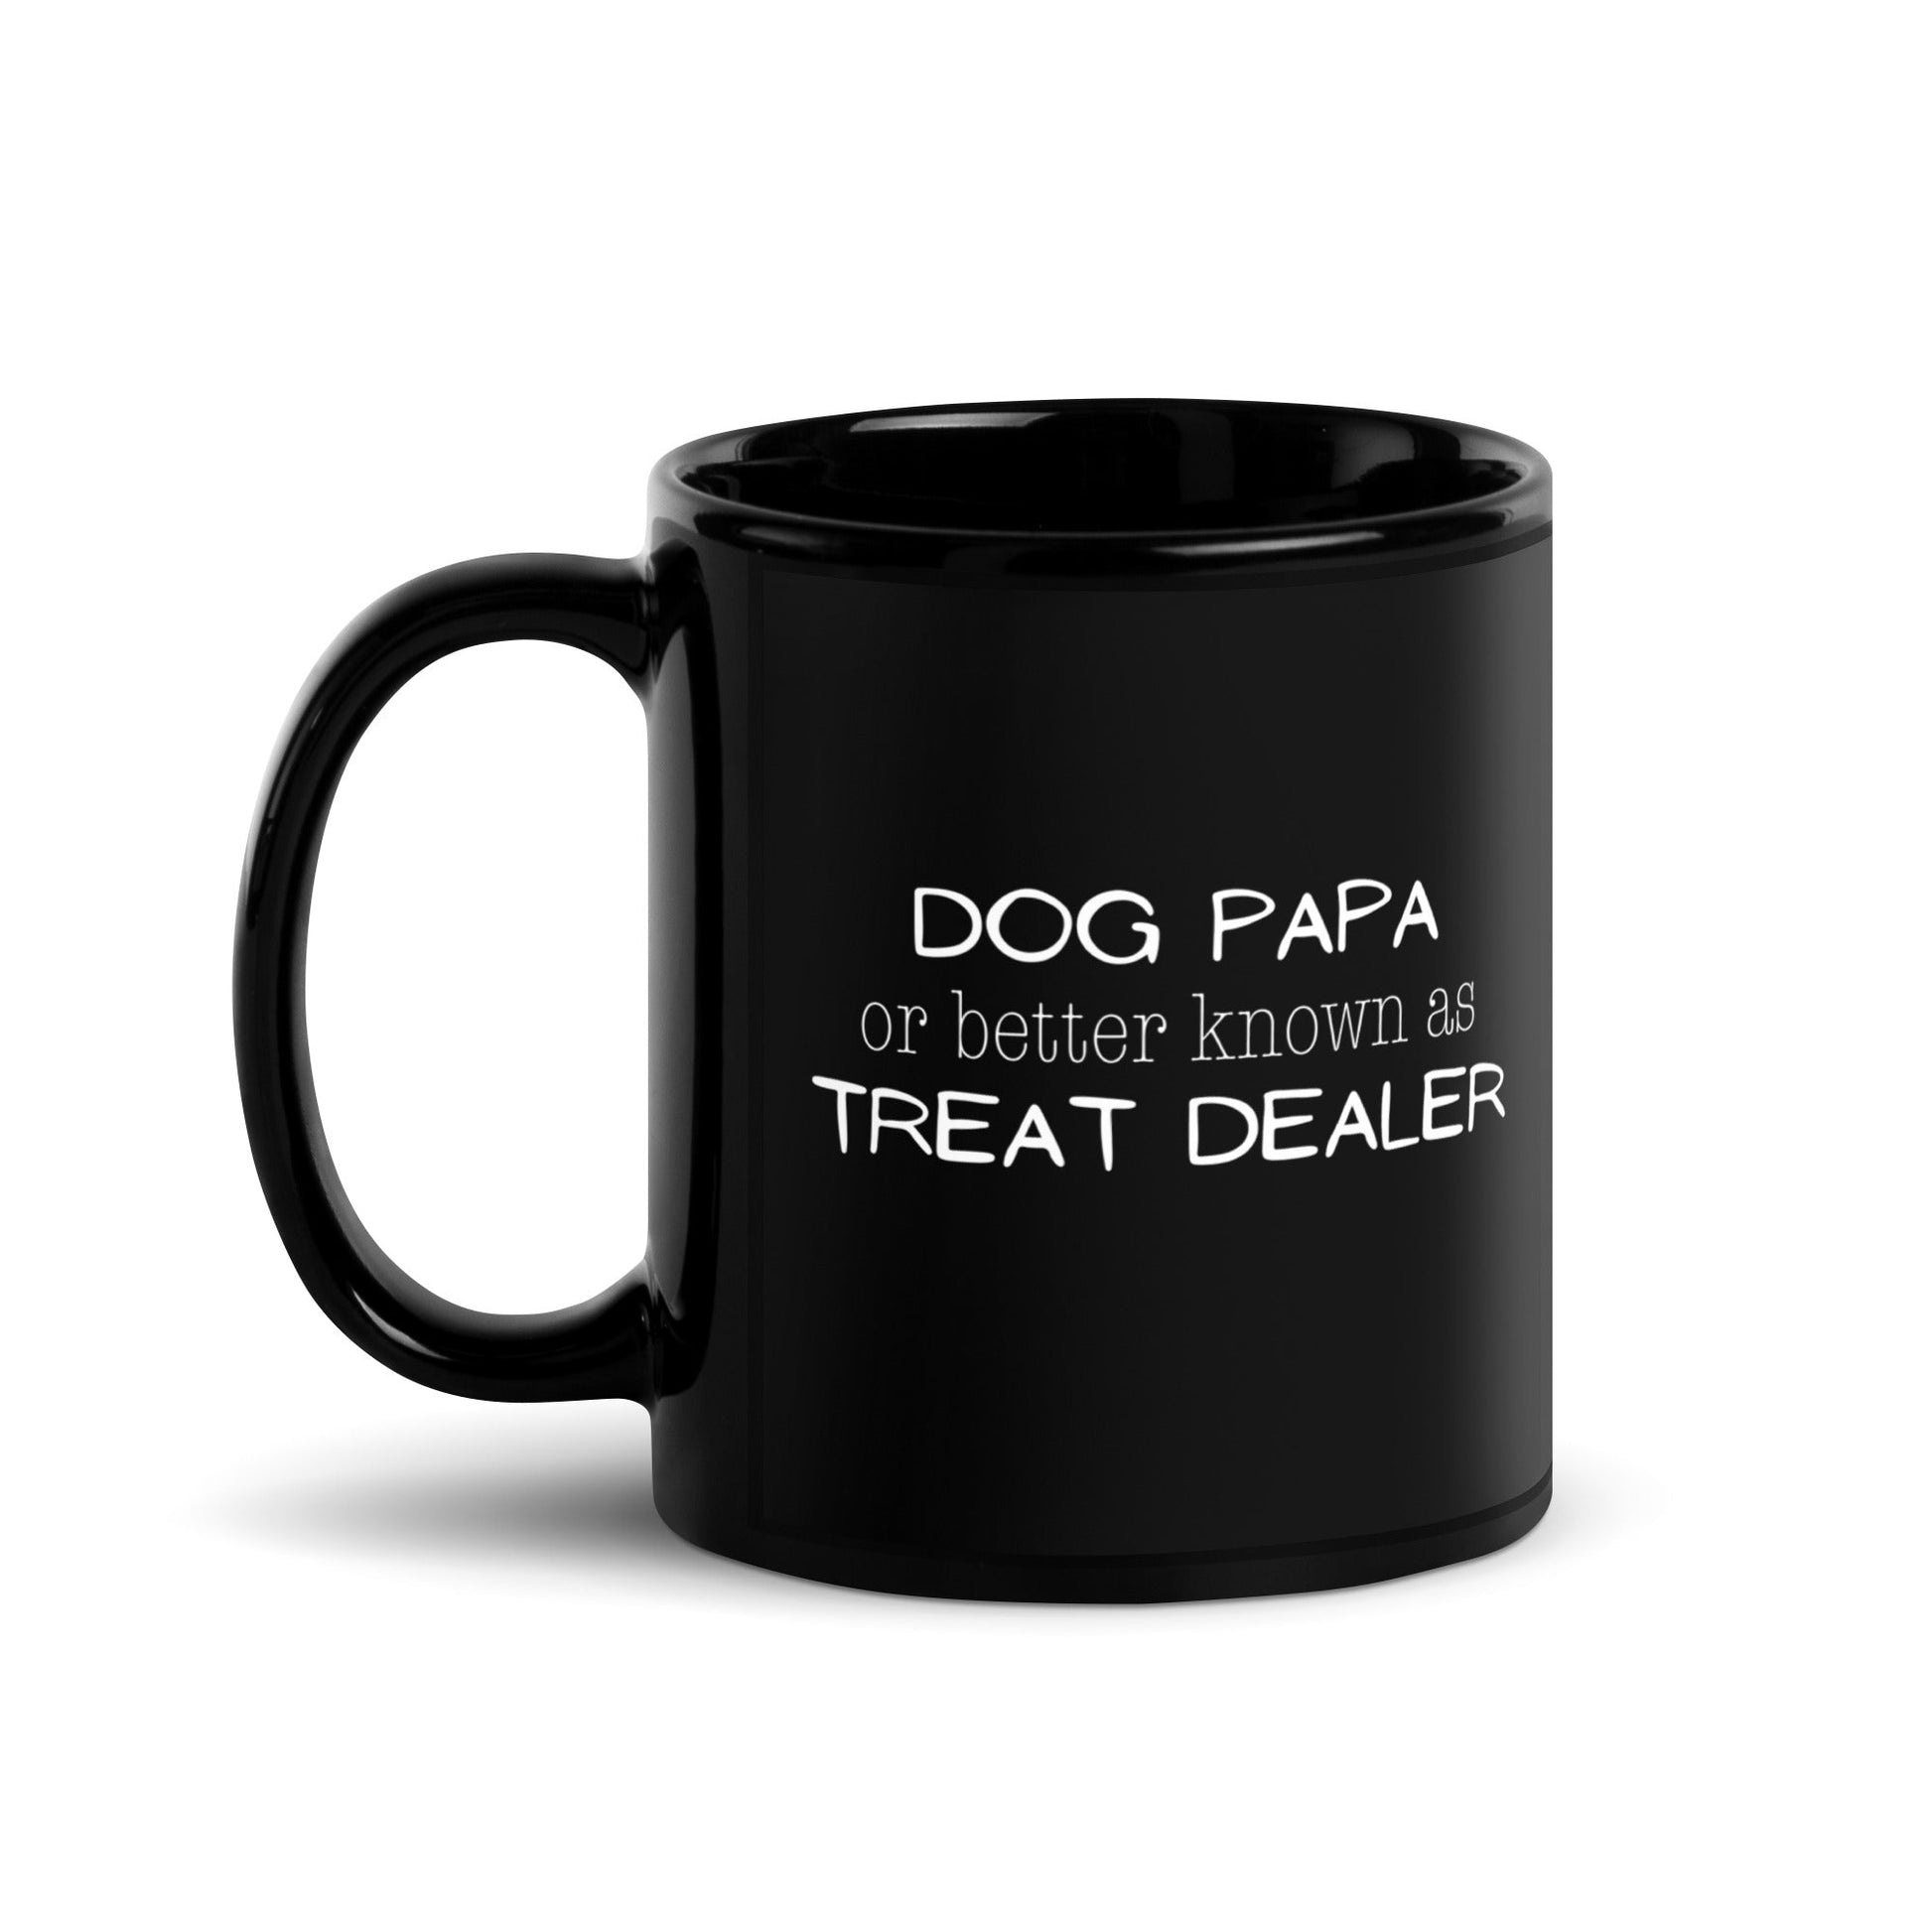 Dog Papa aka Treat Dealer Mug - 11 oz